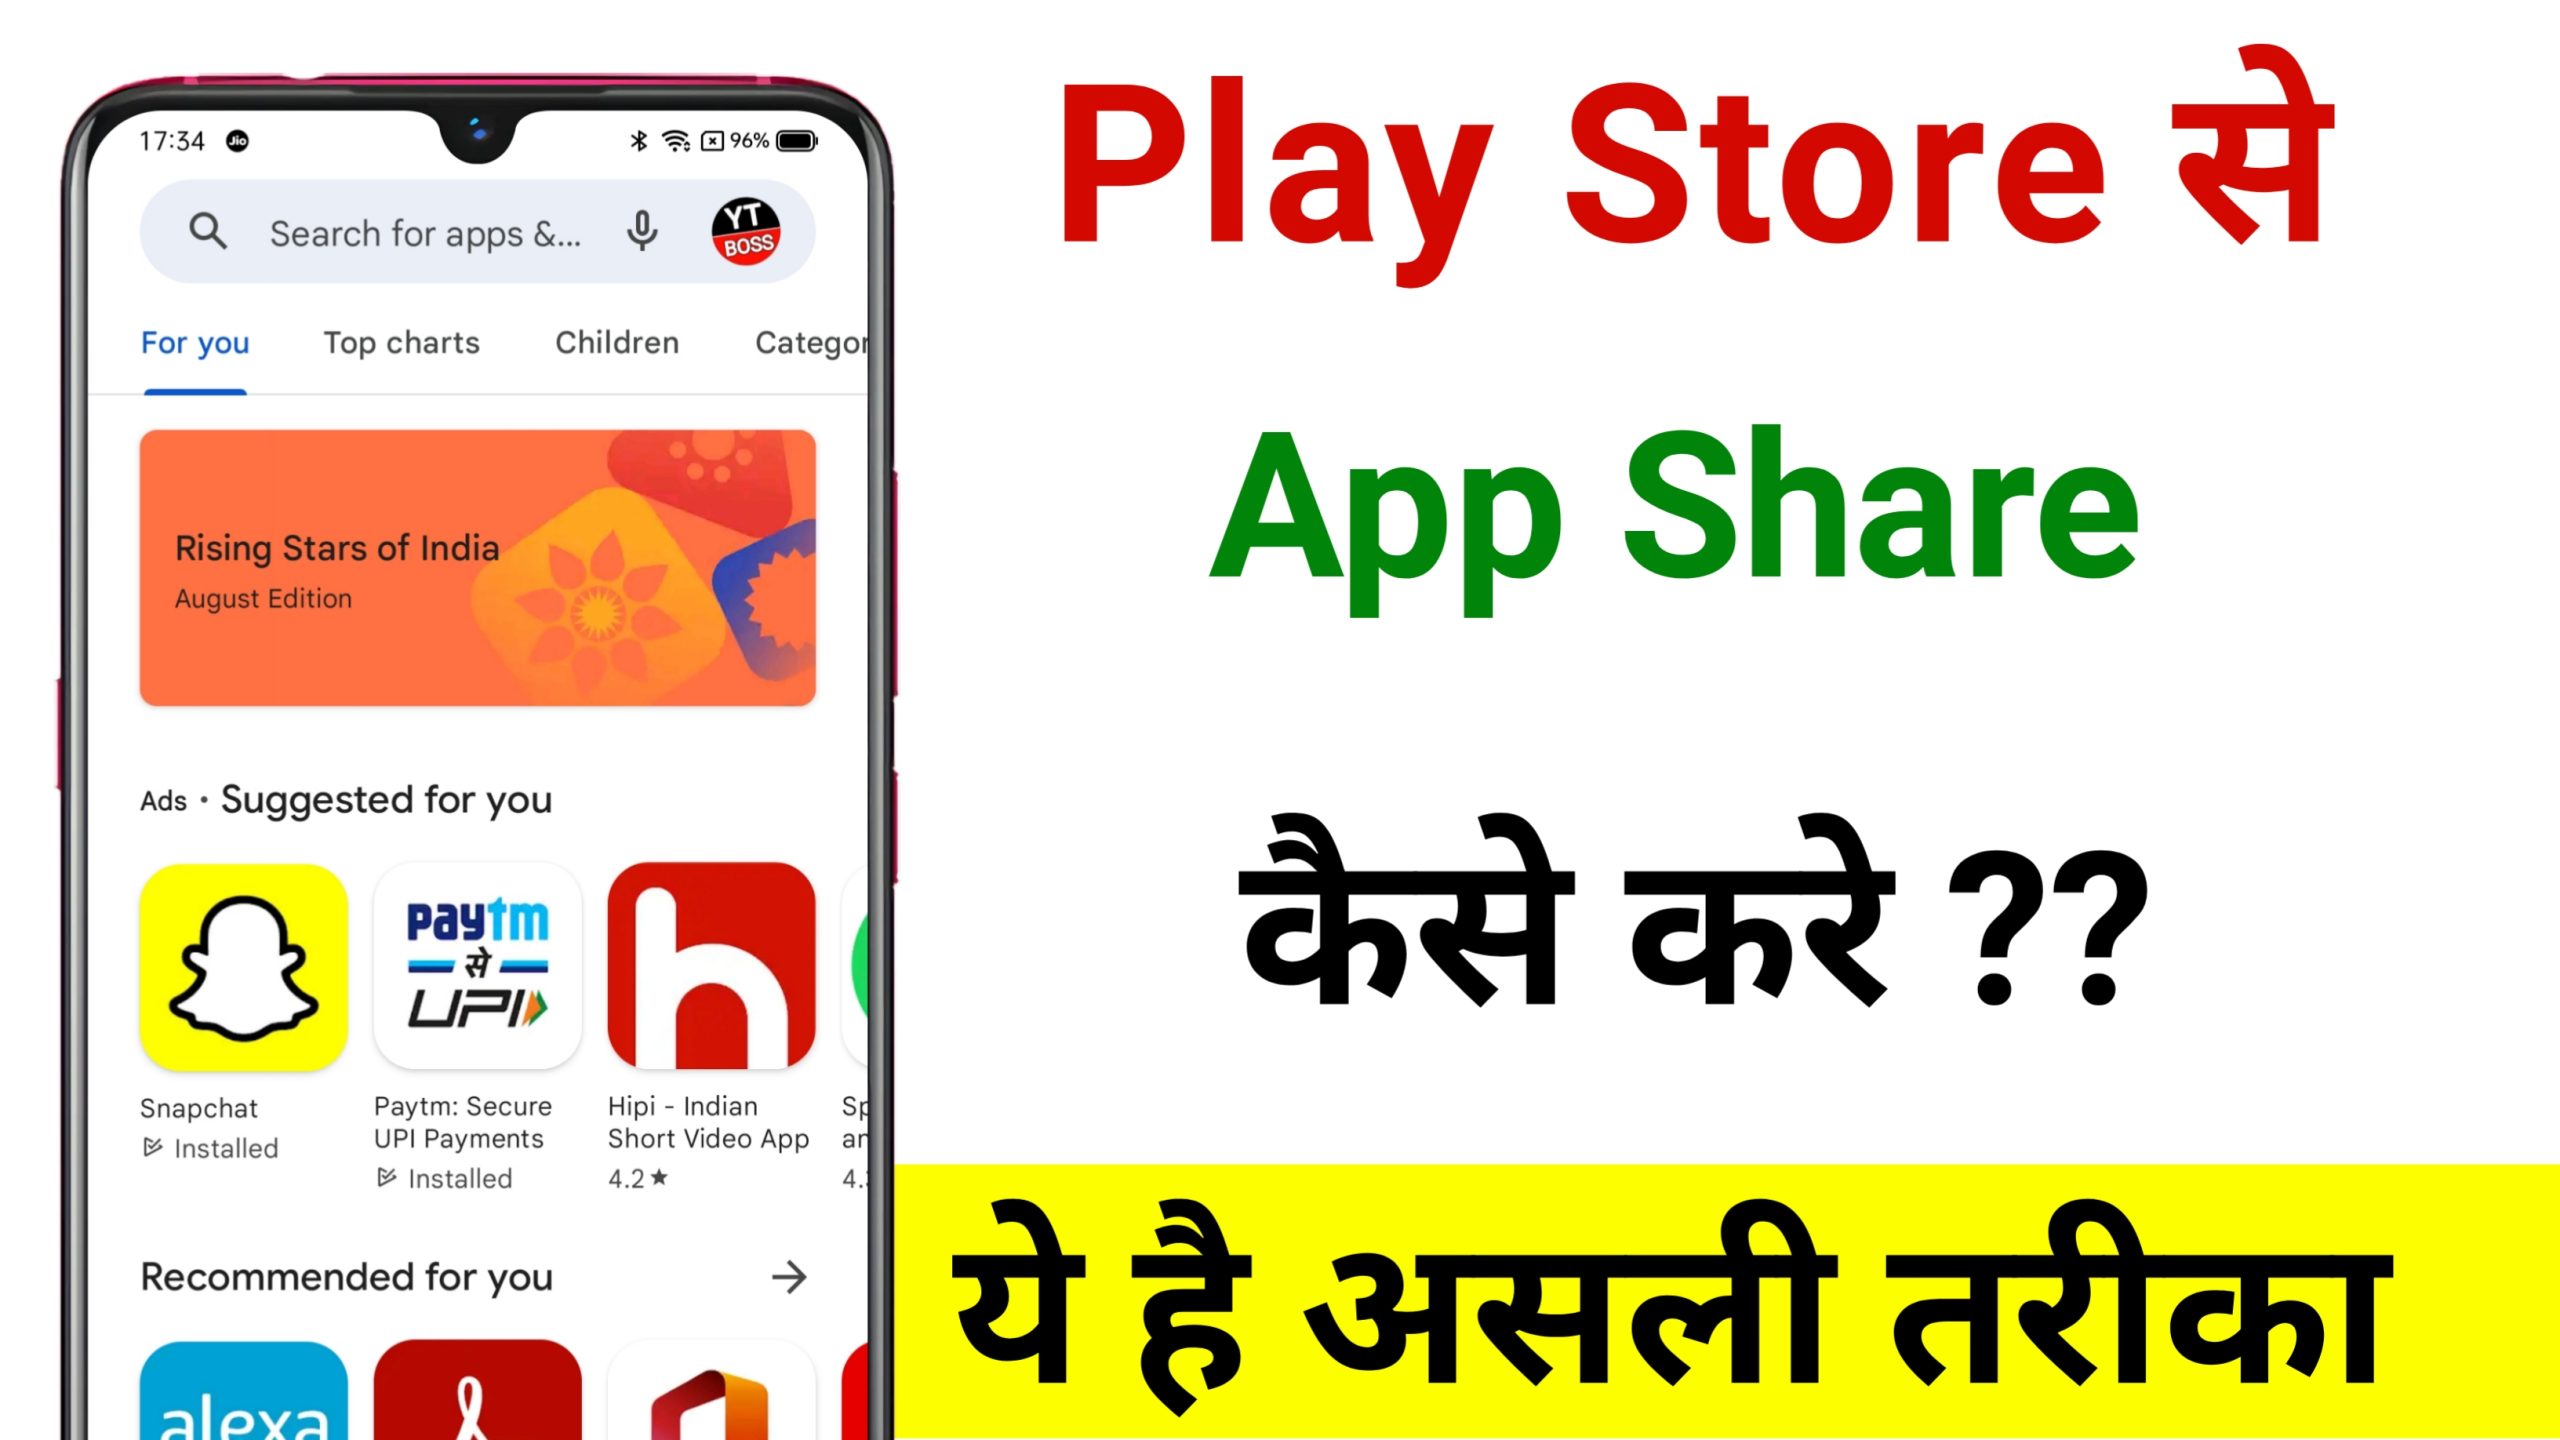 Play Store se App Share Kaise Kare 